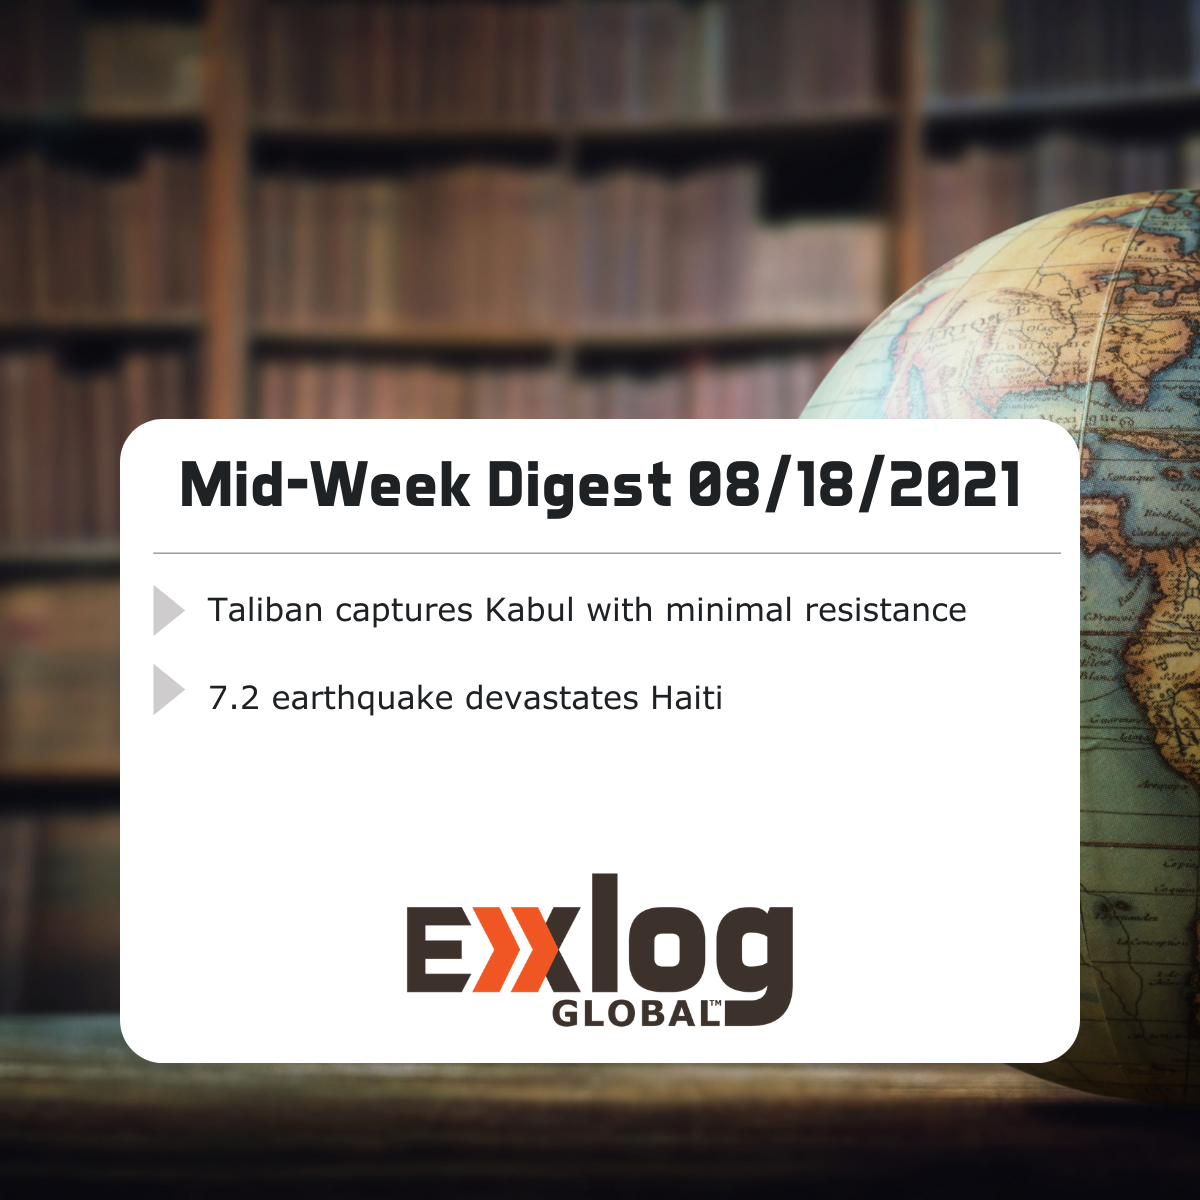 Mid-Week Digest 08/18/2021